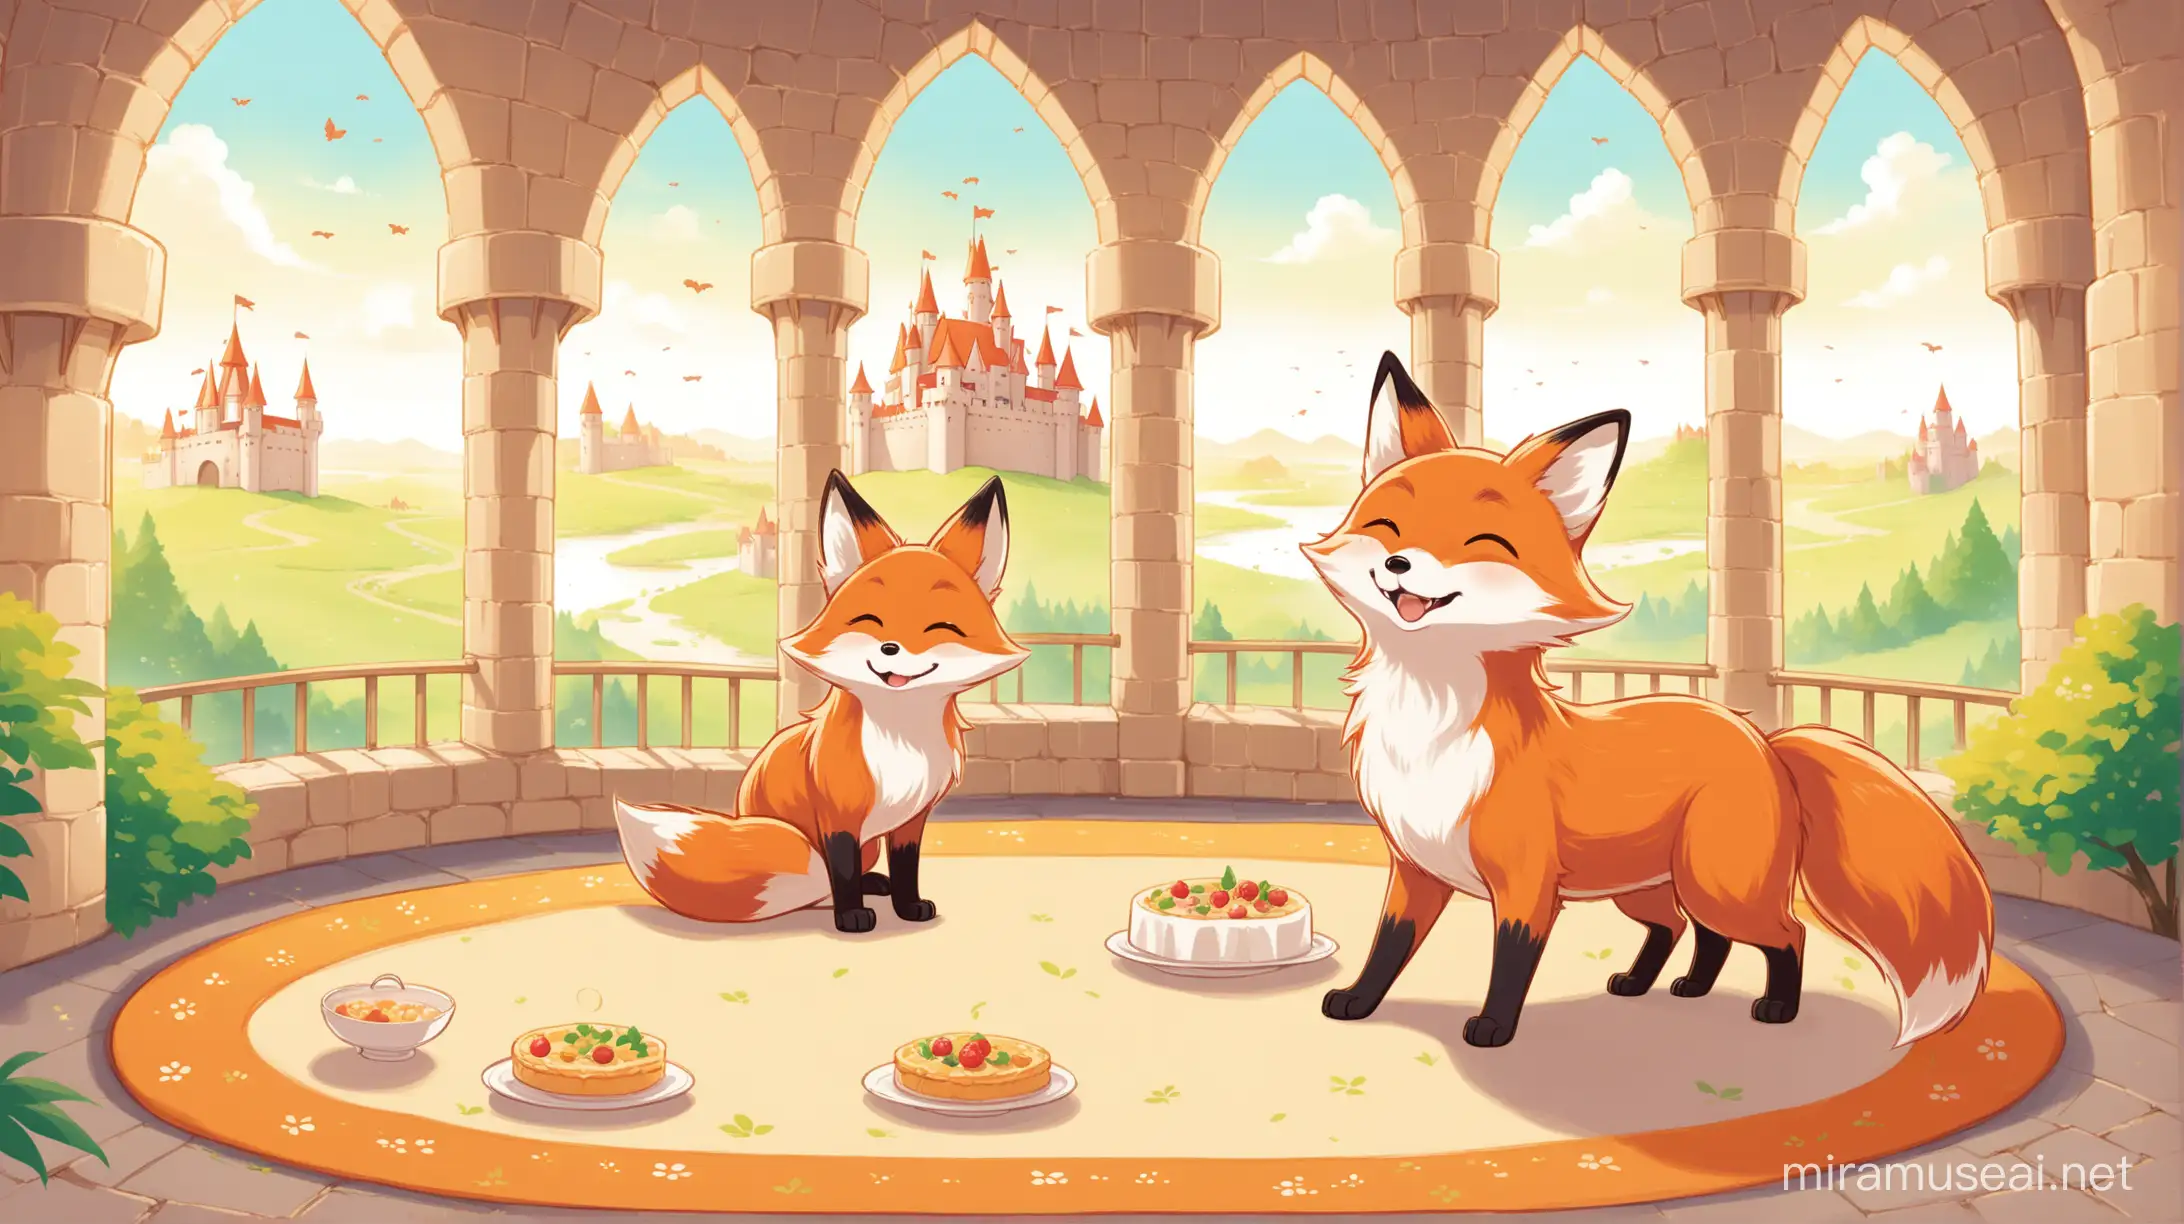 吉普力风格，儿童童书，插画，16：9，可爱，全景展现城堡内部，狐狸与小狐狸嬉戏，享受美食，仿佛外界纷争与之无关。母狐狸在一旁微笑观看，画面温馨和谐。。背景是白色。